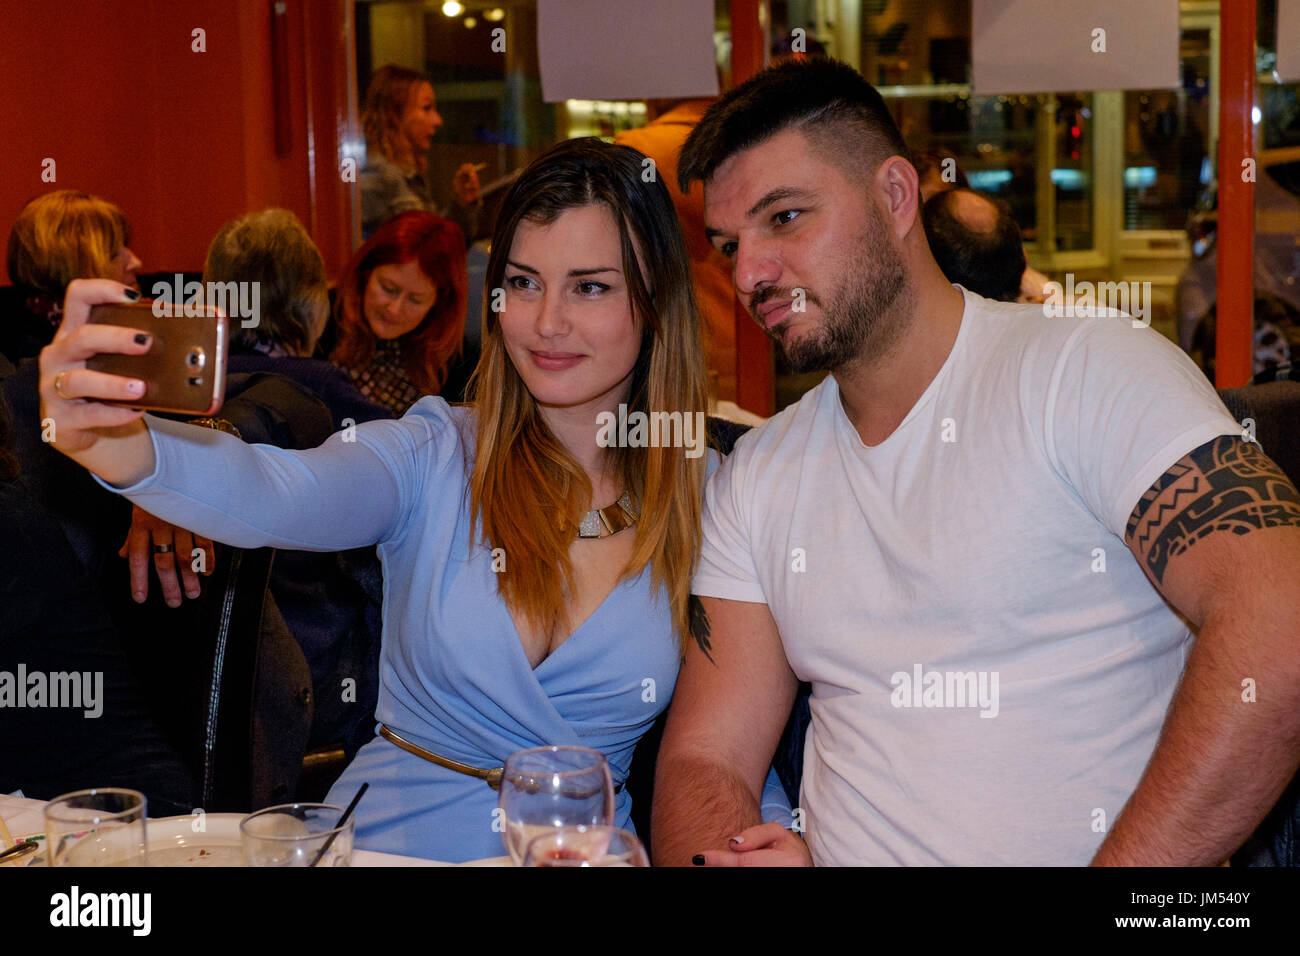 Jolie jeune femme à l'aide d'un smartphone pour prendre un selfy de elle-même et son partenaire masculin à l'intérieur d'un restaurant Banque D'Images